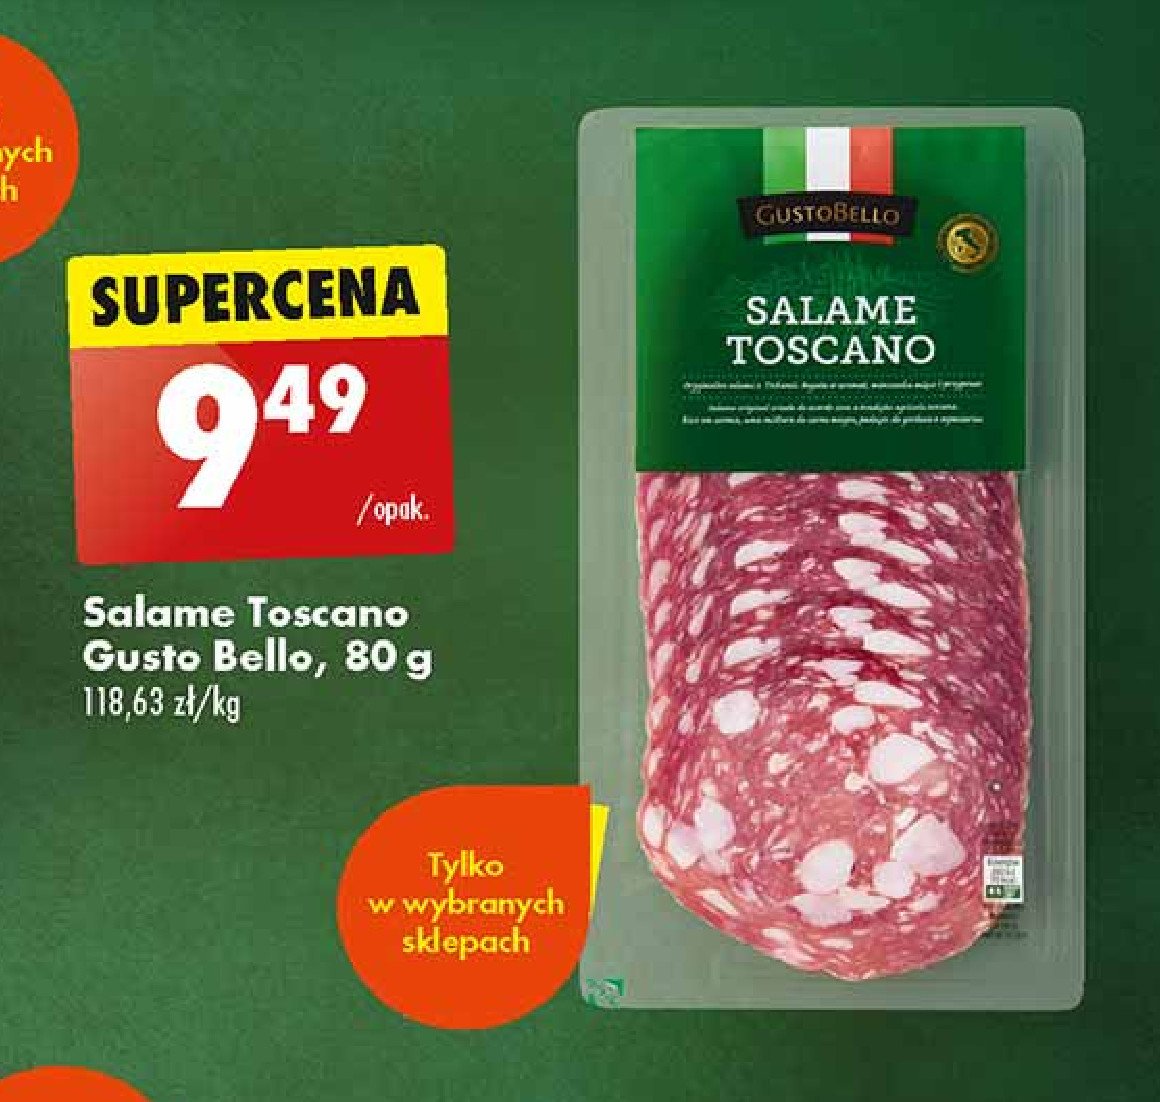 Salami toscano Gustobello promocja